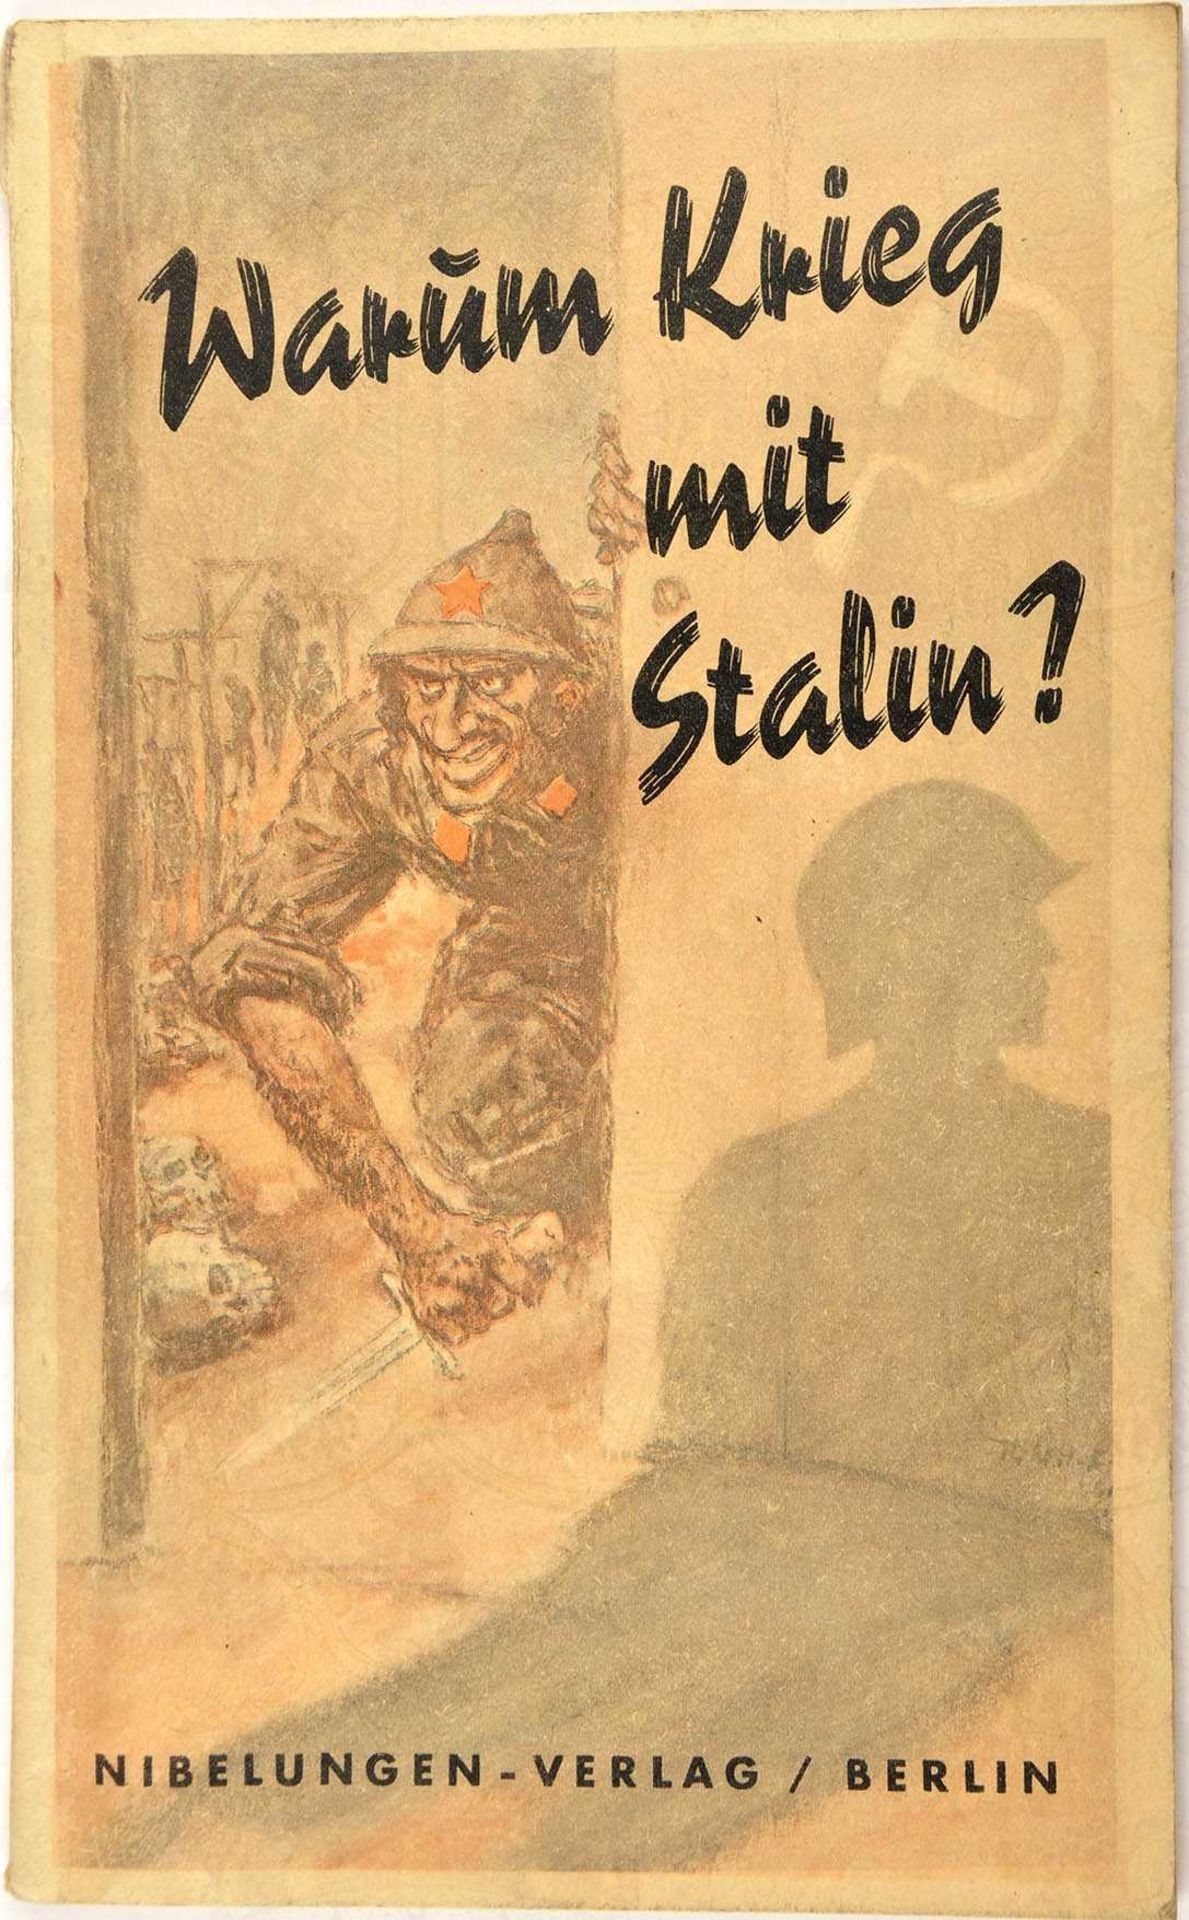 WARUM KRIEG MIT STALIN ?, "Das Rotbuch der Anti-Komintern", Nibelungen-Verlag, Berlin 1941, 126